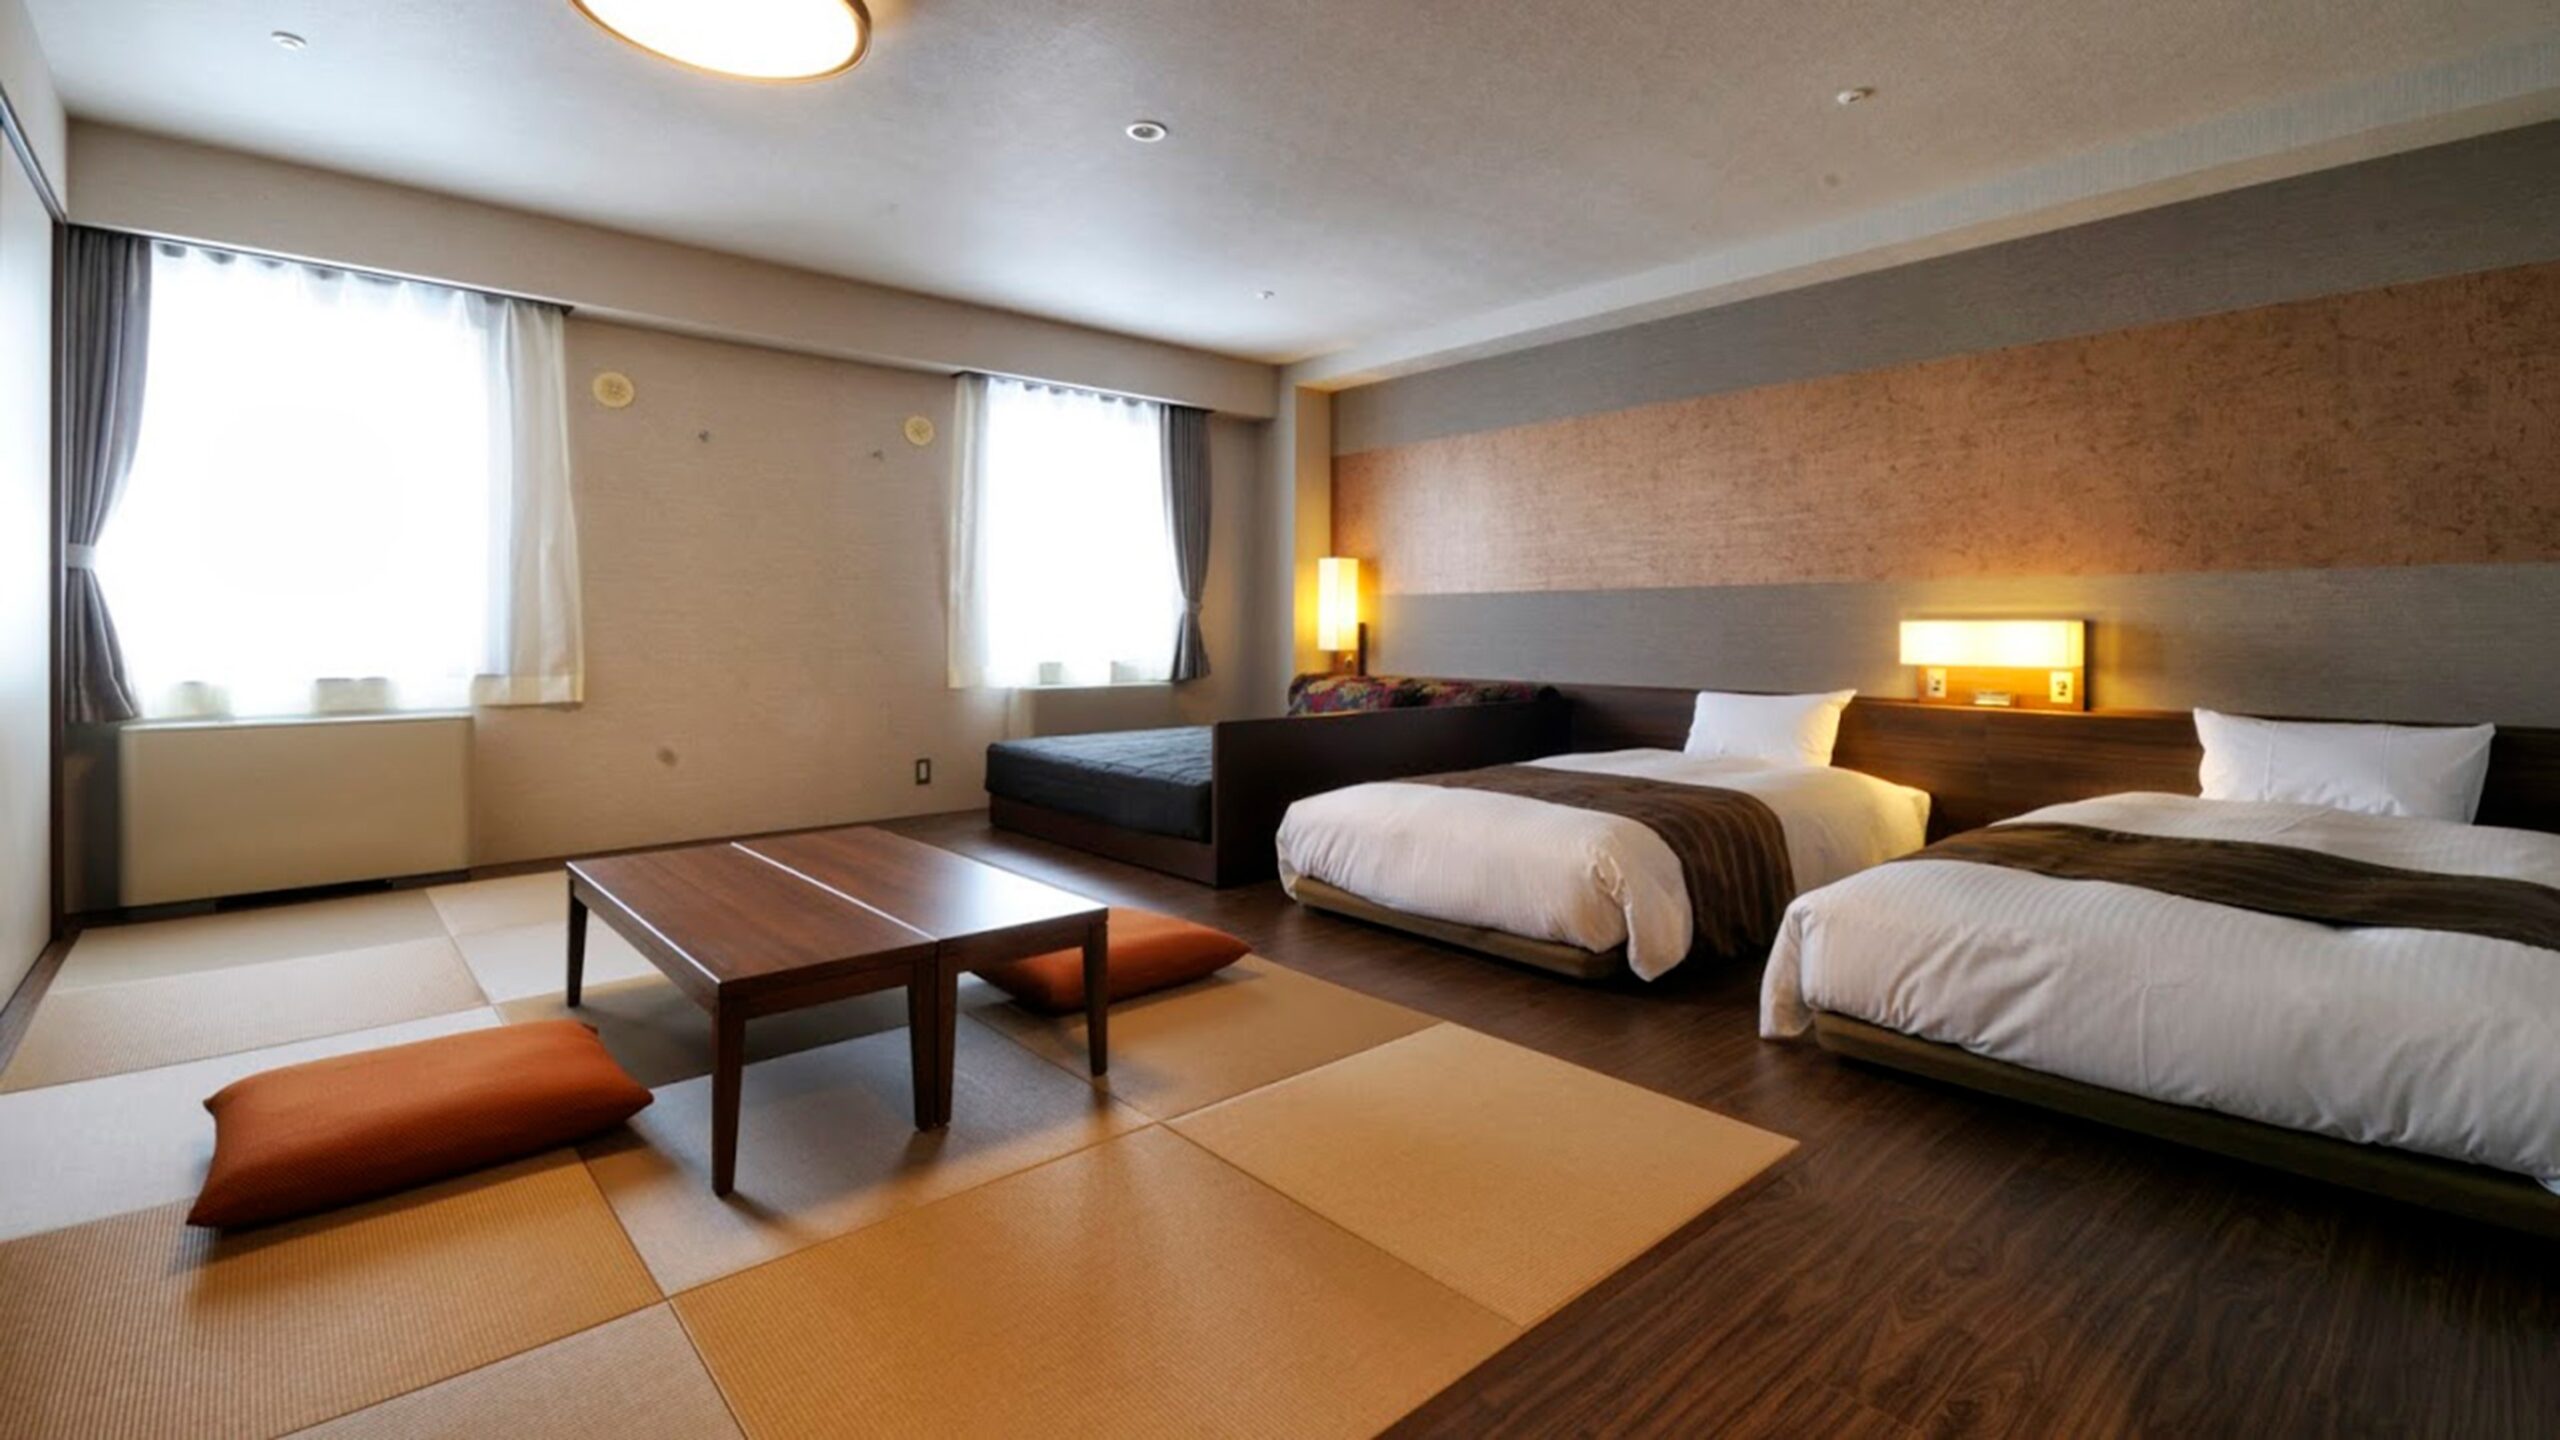 ニセコのホテルの高級ホテル25選　19位:ニセコ東急リゾート ホテルニセコアルペン